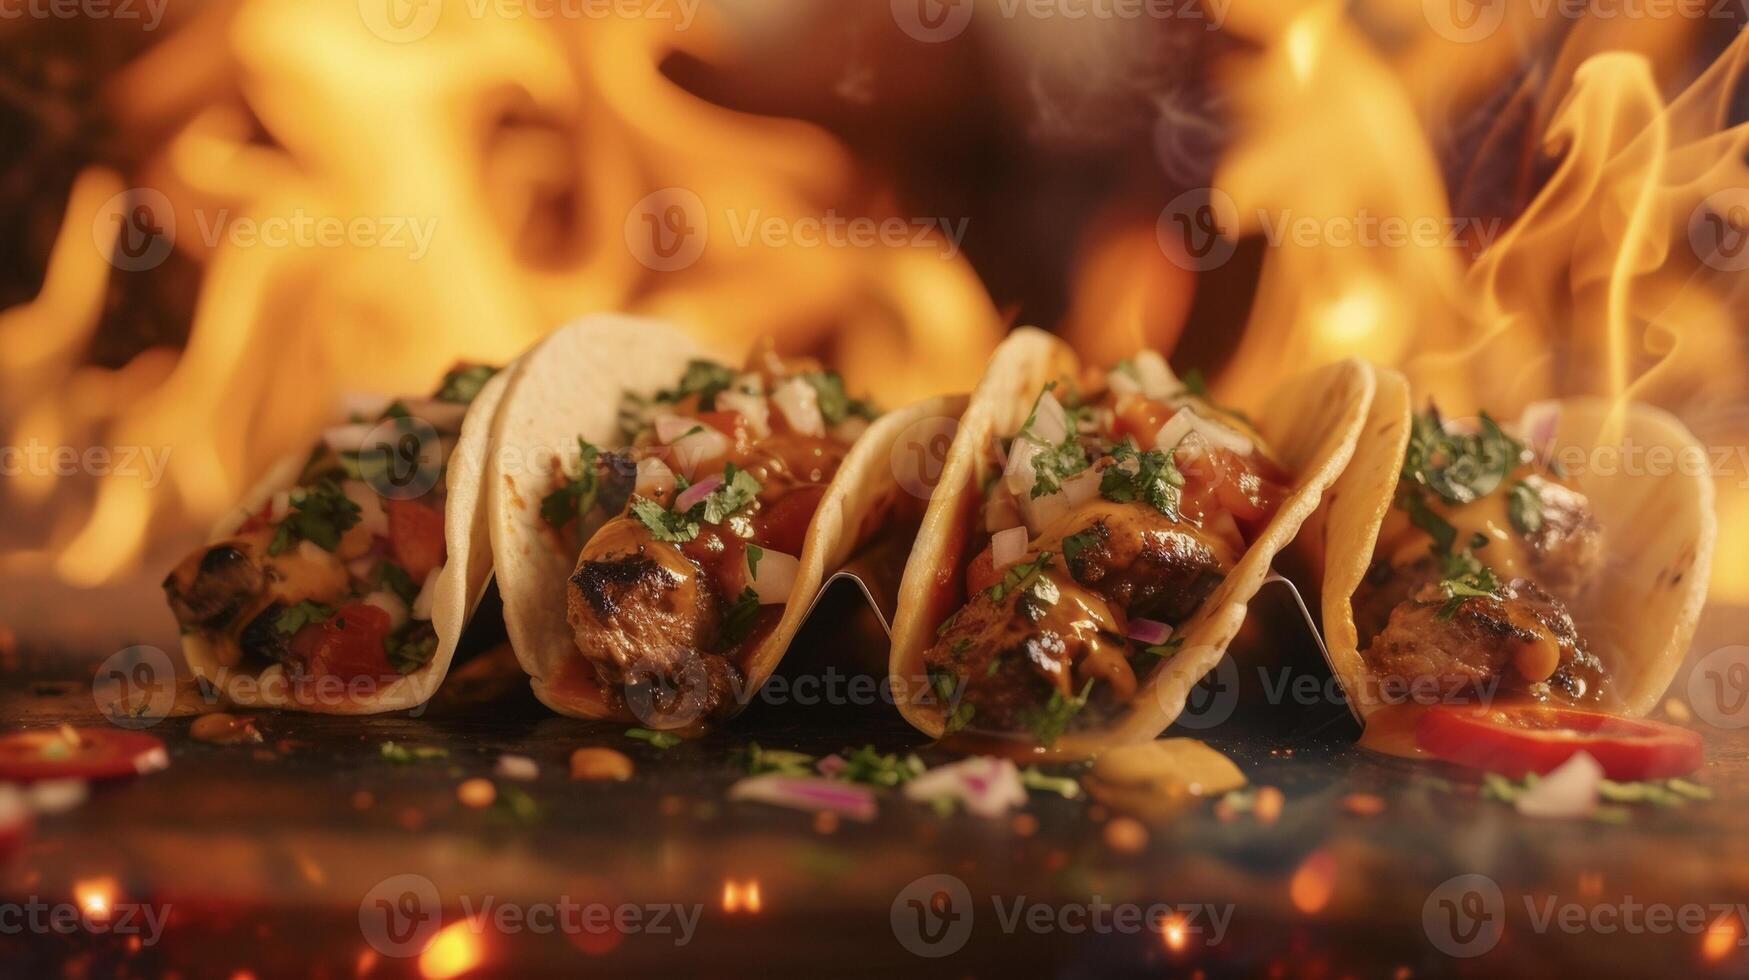 queste tacos siamo su fuoco orologio come il succoso carne è grigliato per perfezione e sormontato con un' ardente miscela di erbe aromatiche e es tutti mentre fiamme rabbia nel il sfondo foto